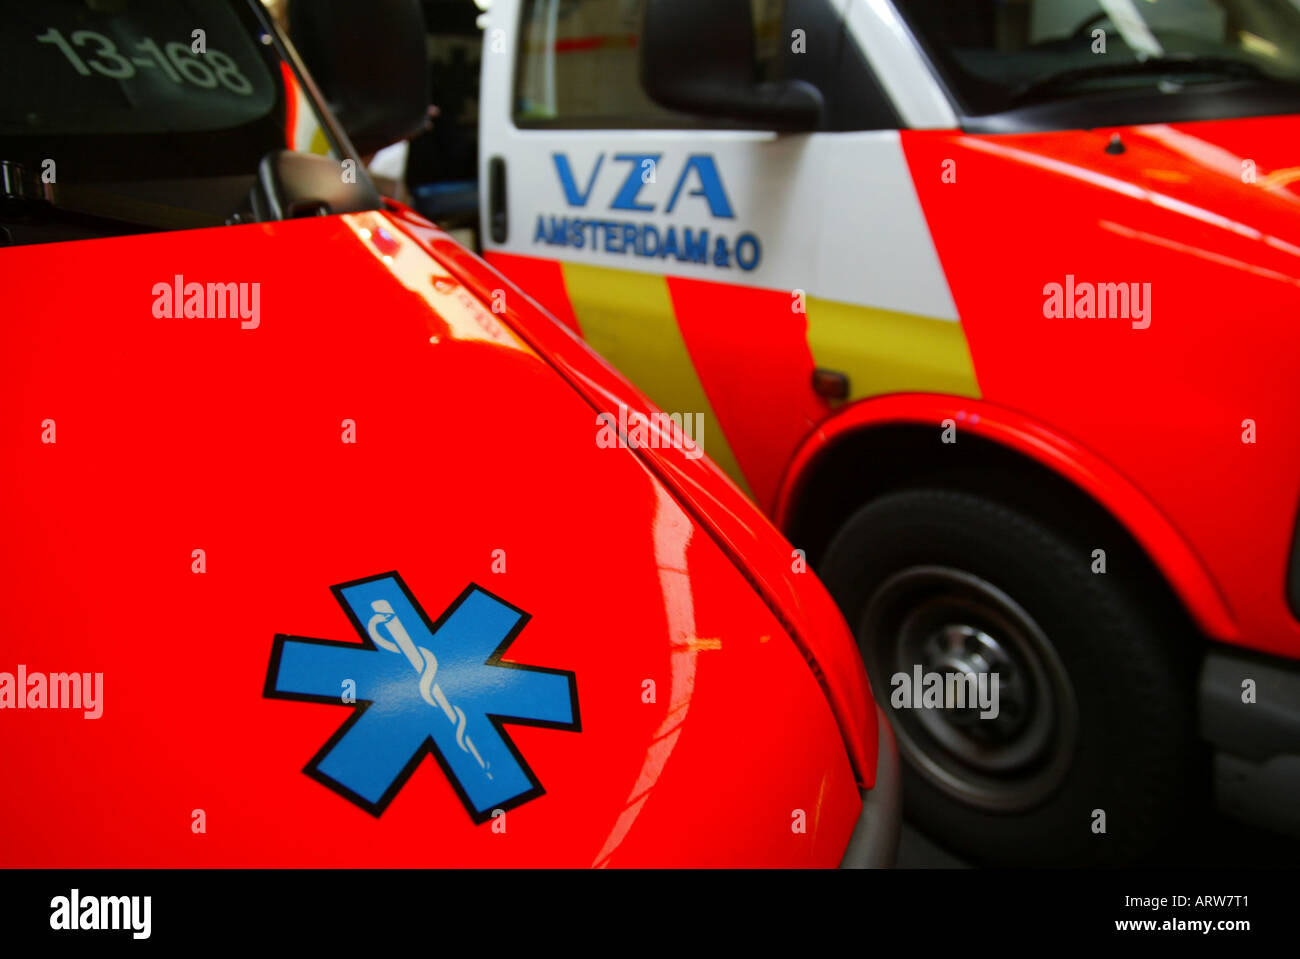 Emergency services: ambulance Stock Photo